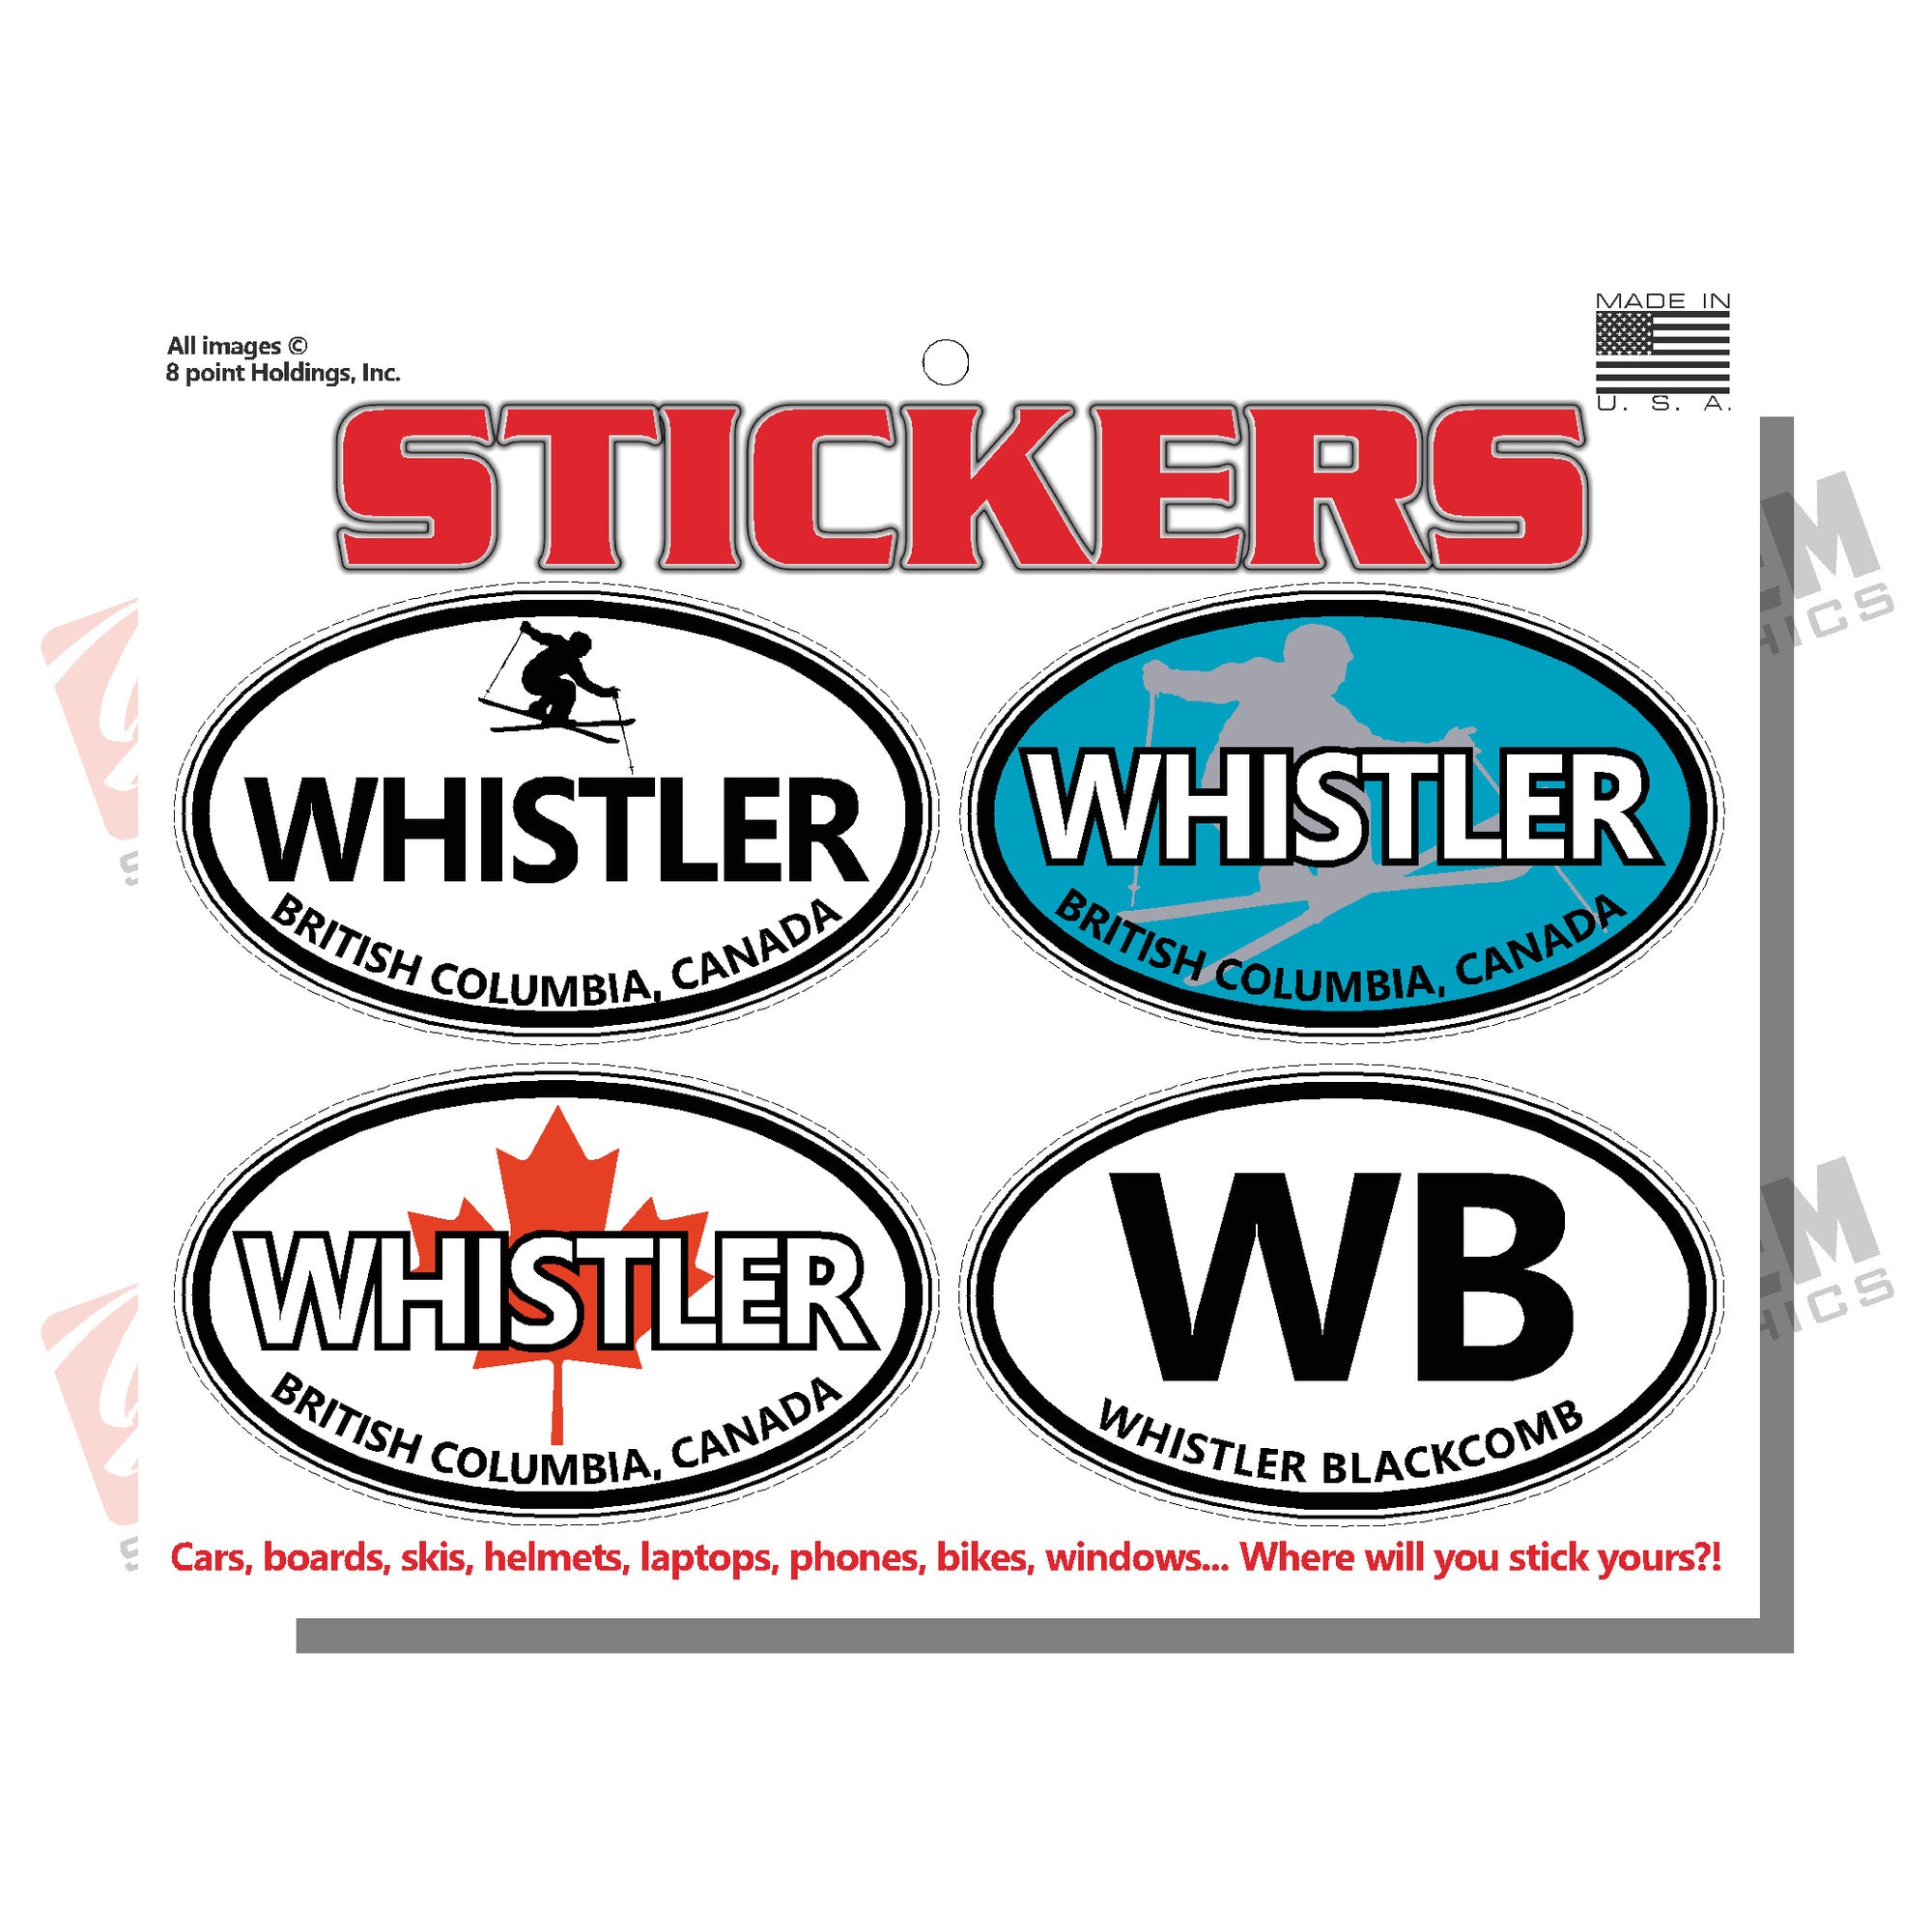 Whistler British Columbia Canada Skier sticker sheet